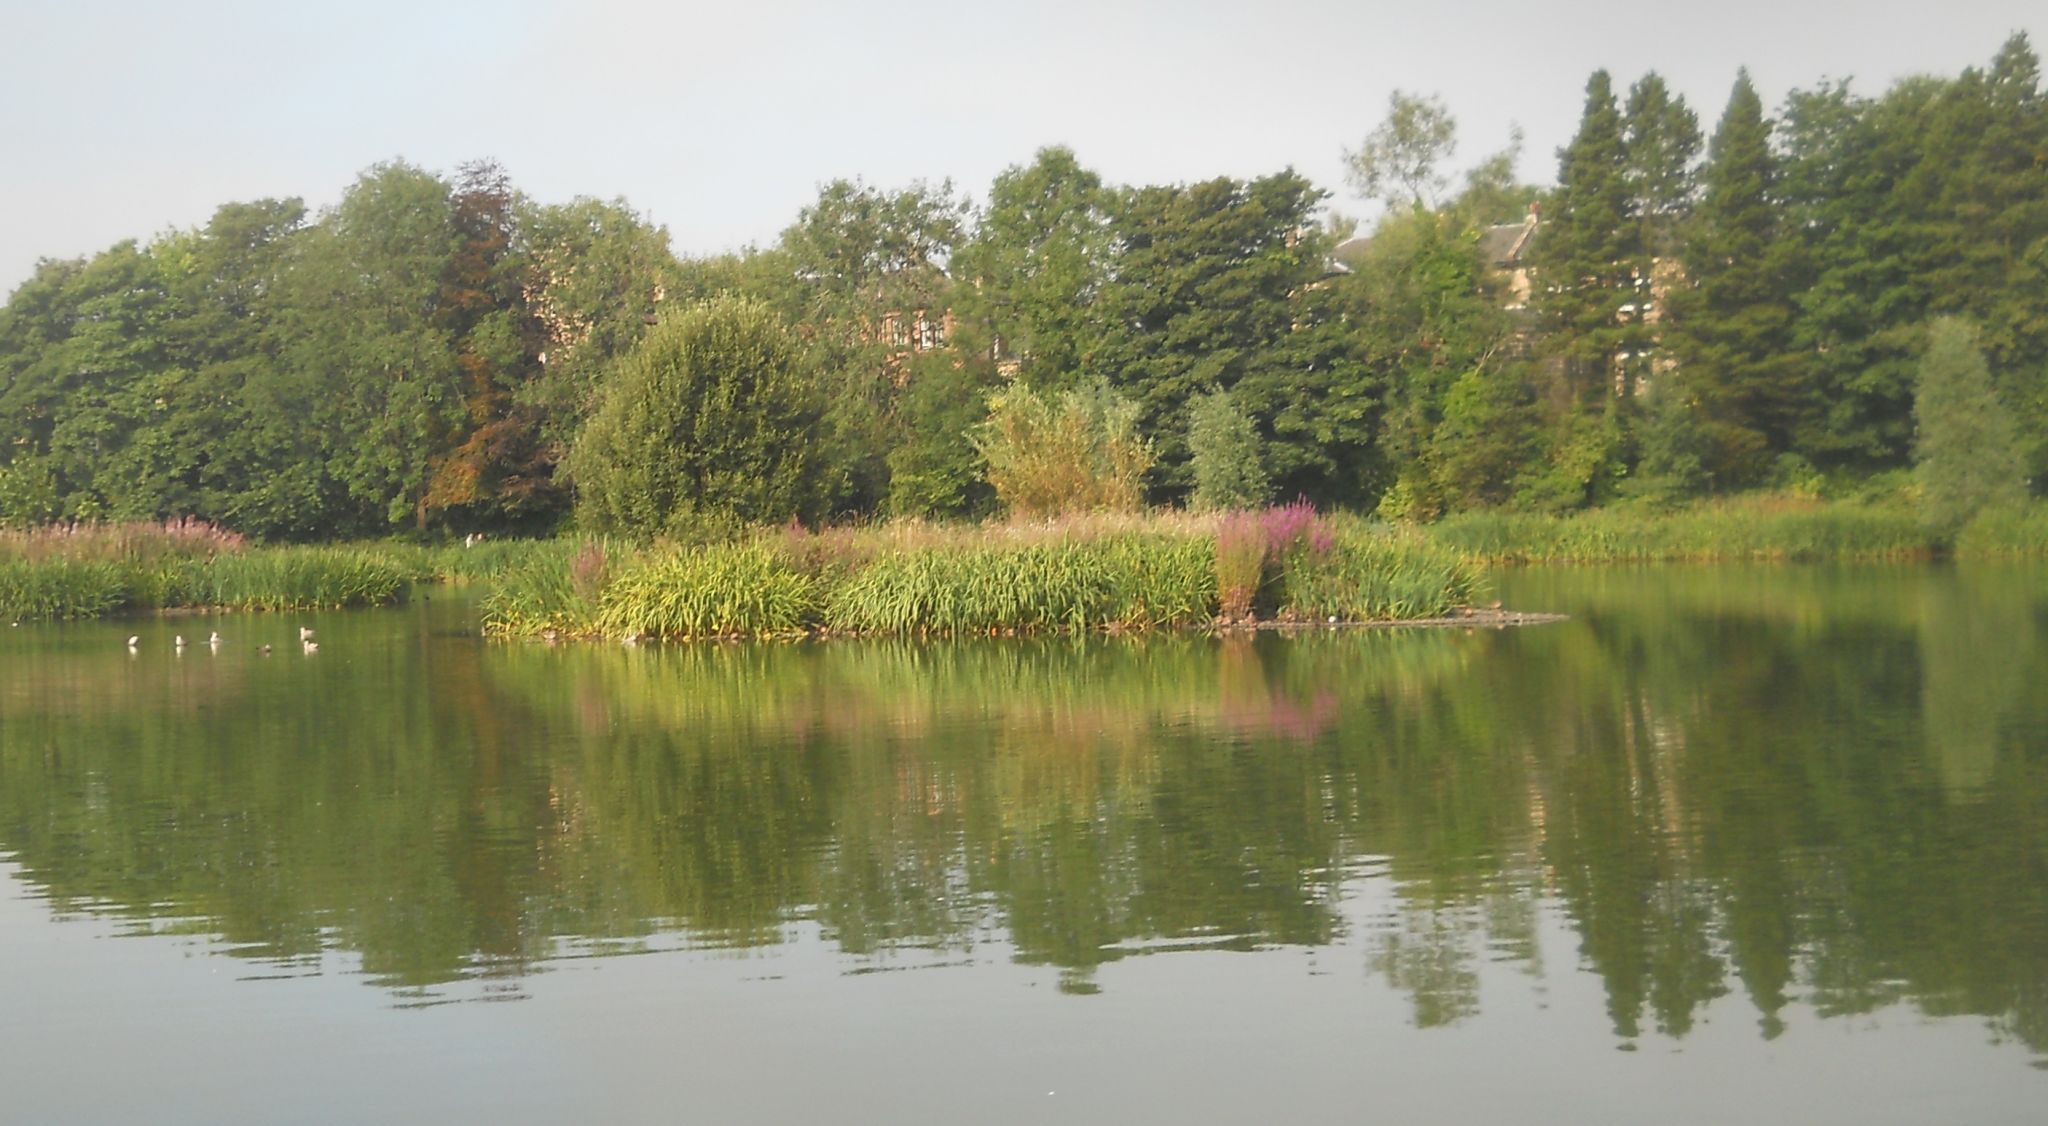 Bingham's Pond in Great Western Road